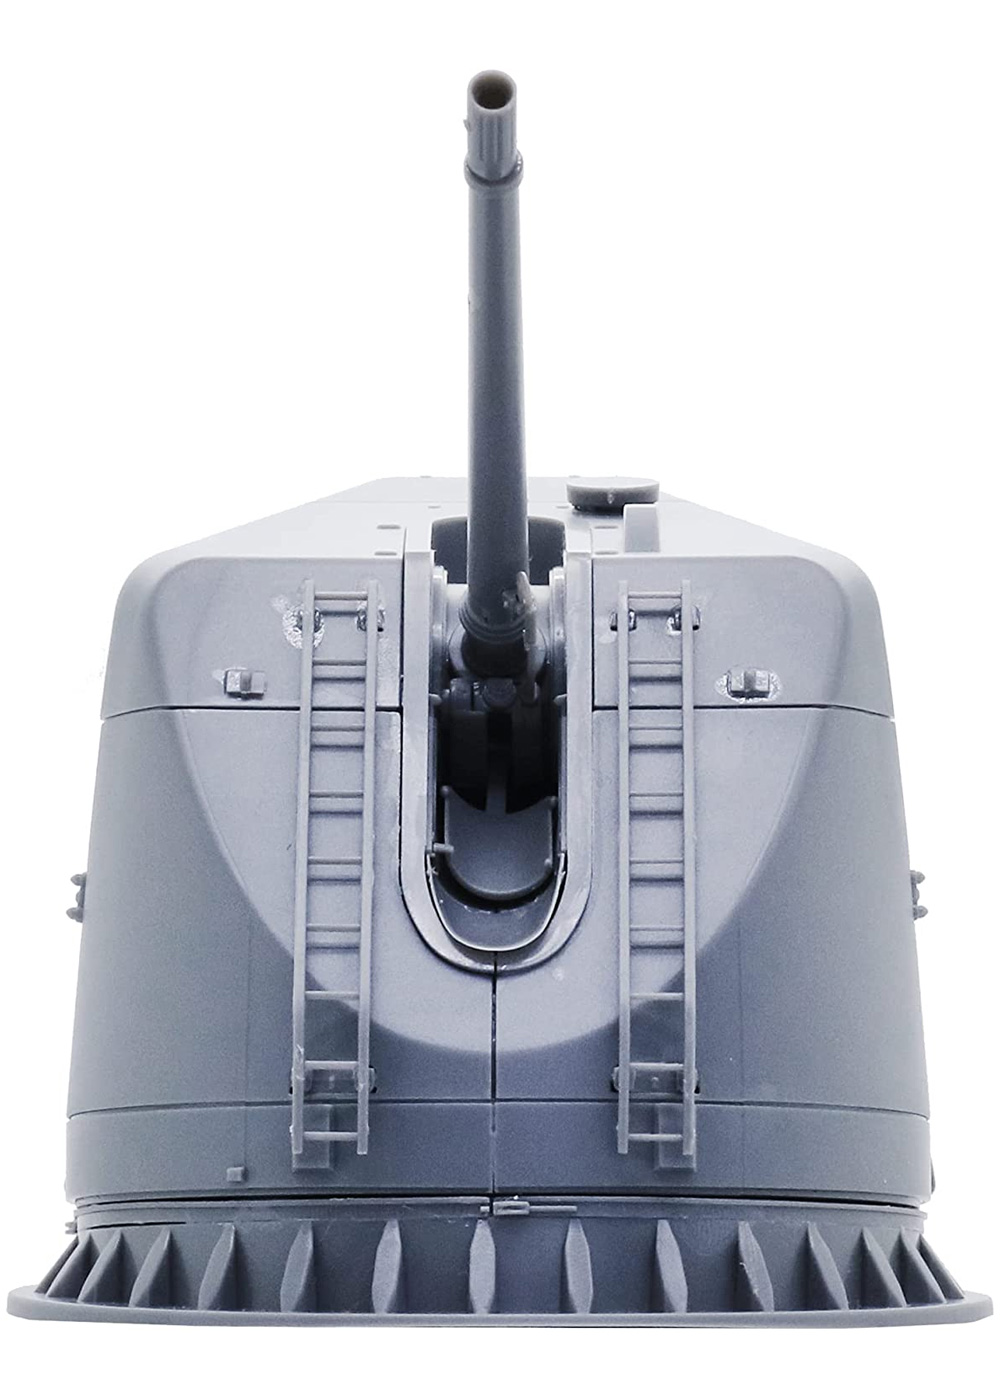 護衛艦 たかなみ型 54口径 127mm速射砲 プラモデル (フジミ 集める装備品シリーズ No.007) 商品画像_4